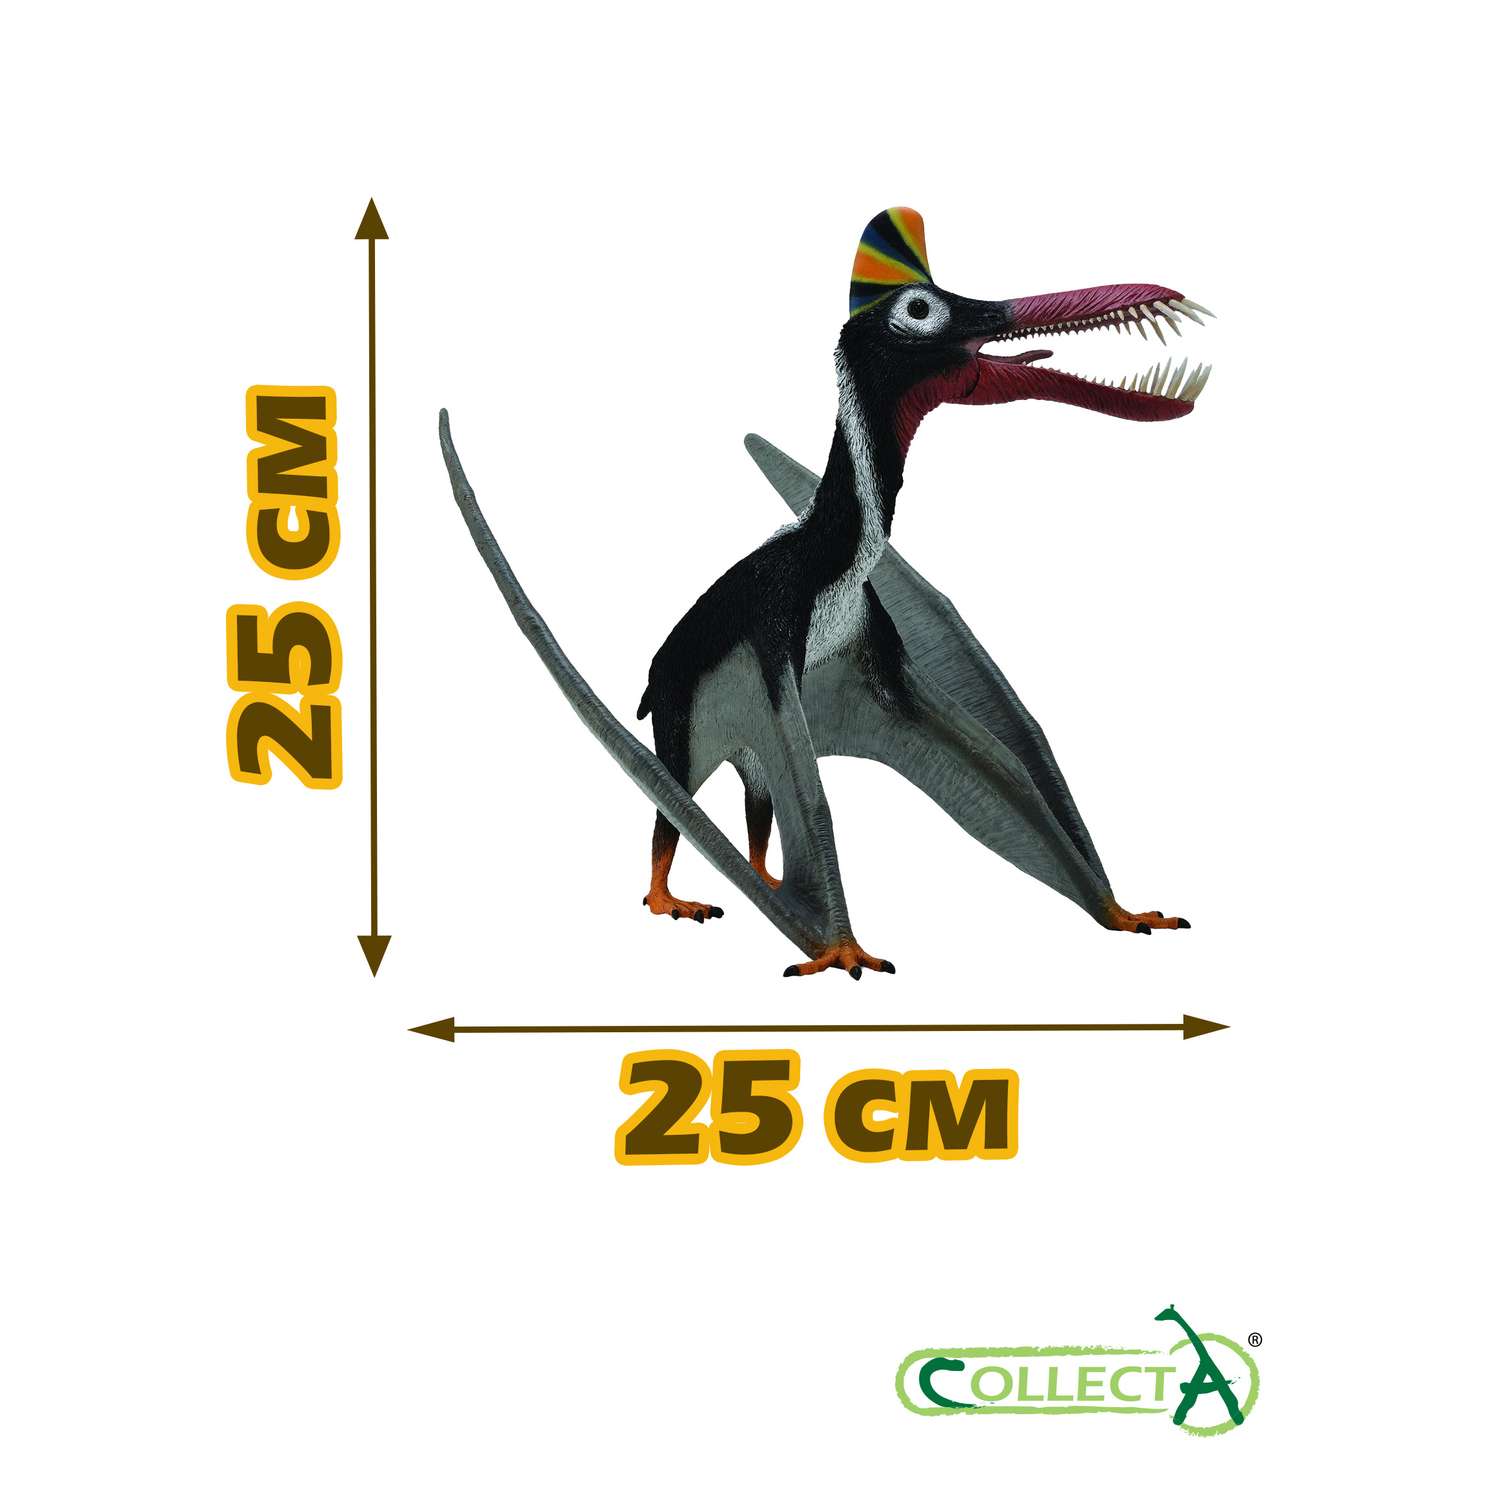 Игрушка Collecta Гуйдрако с подвижной челюстью 1:40 фигурка динозавра - фото 2